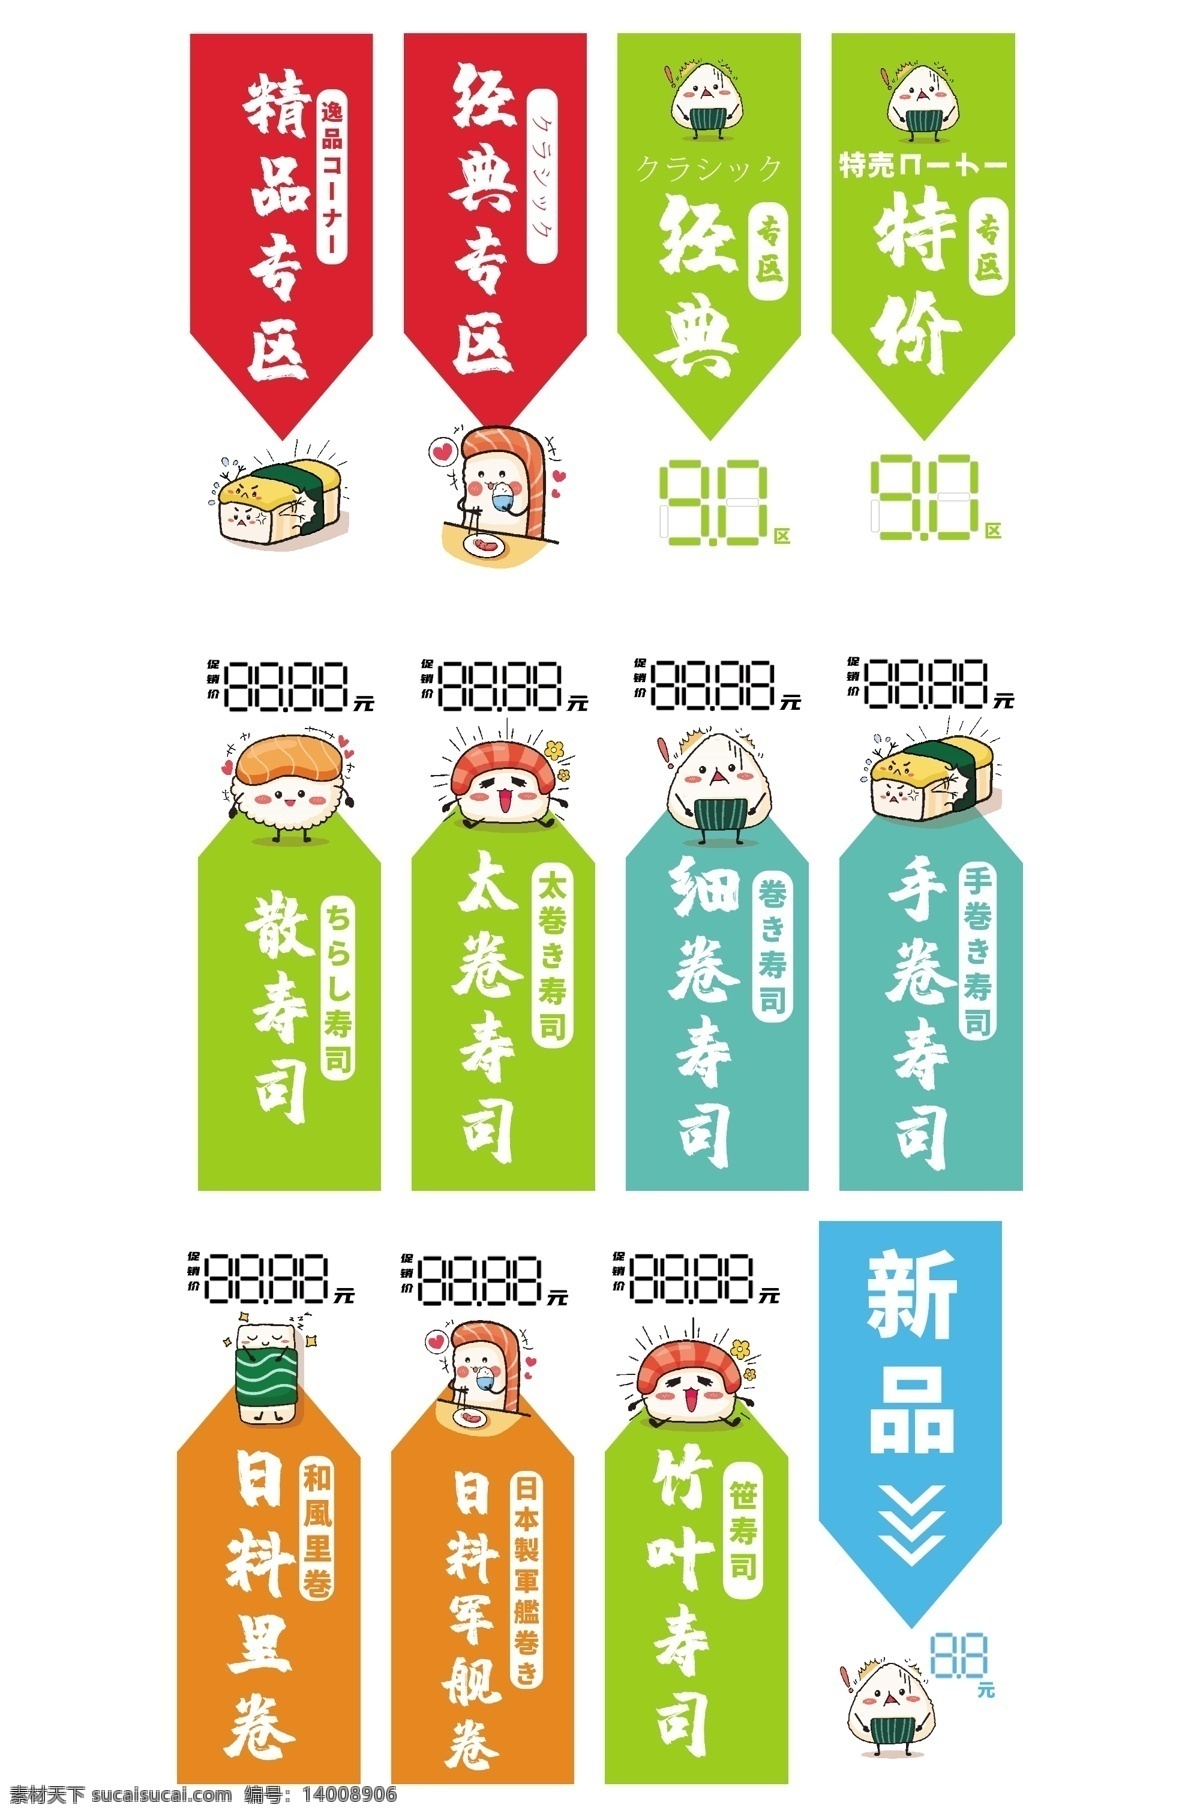 日式料理图片 日式料理 精品专区 标识设计 食品 简约 标志图标